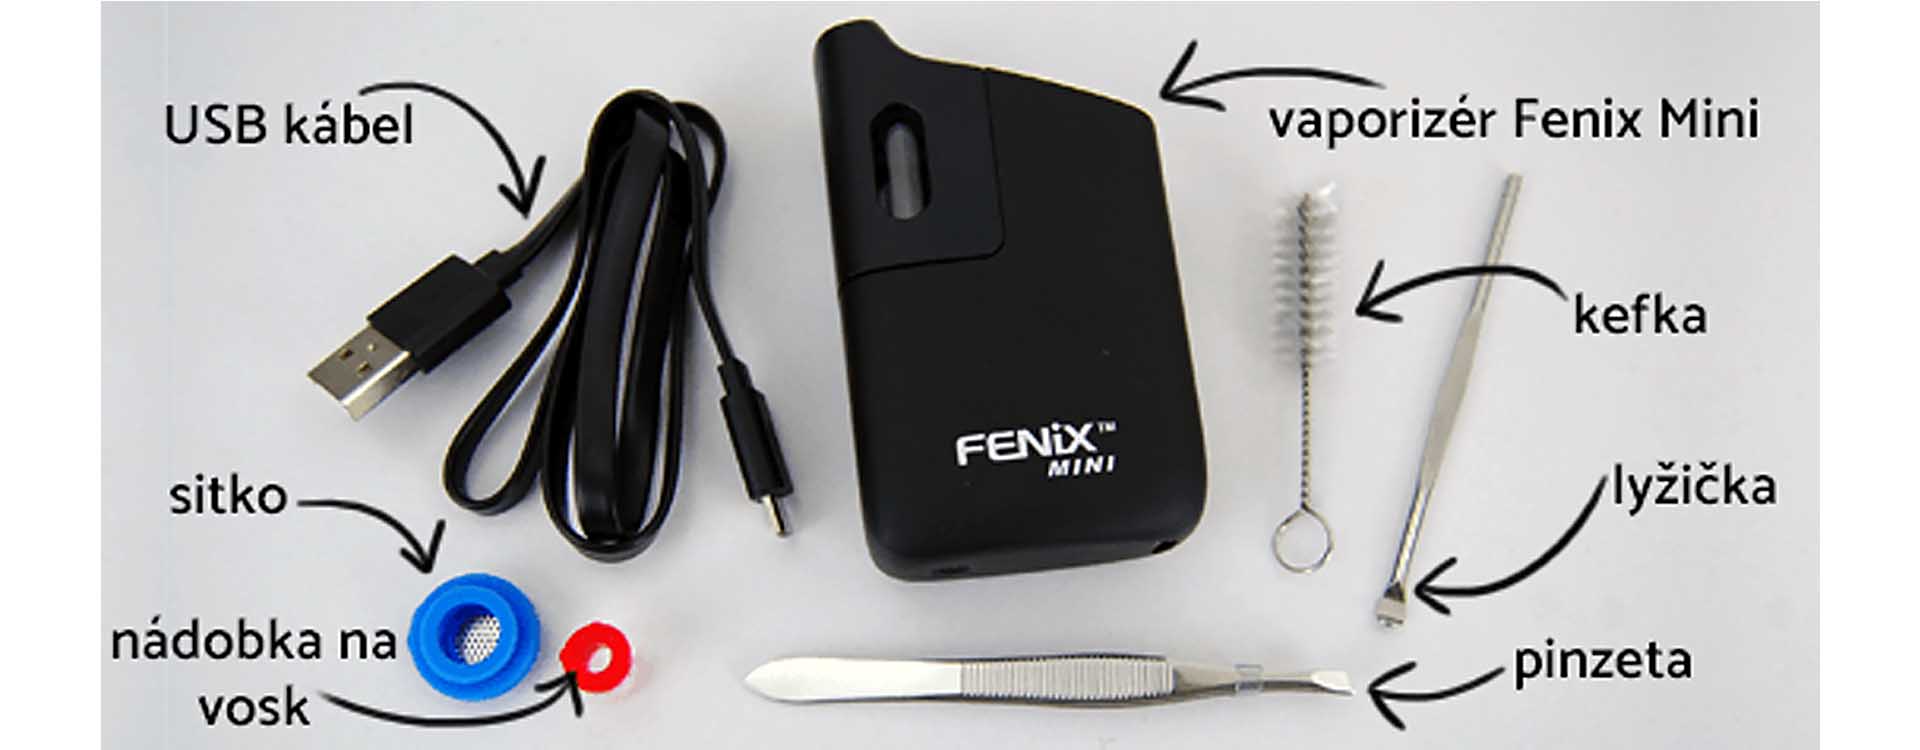 Ako používať vaporizér Fenix mini - obsah balenia